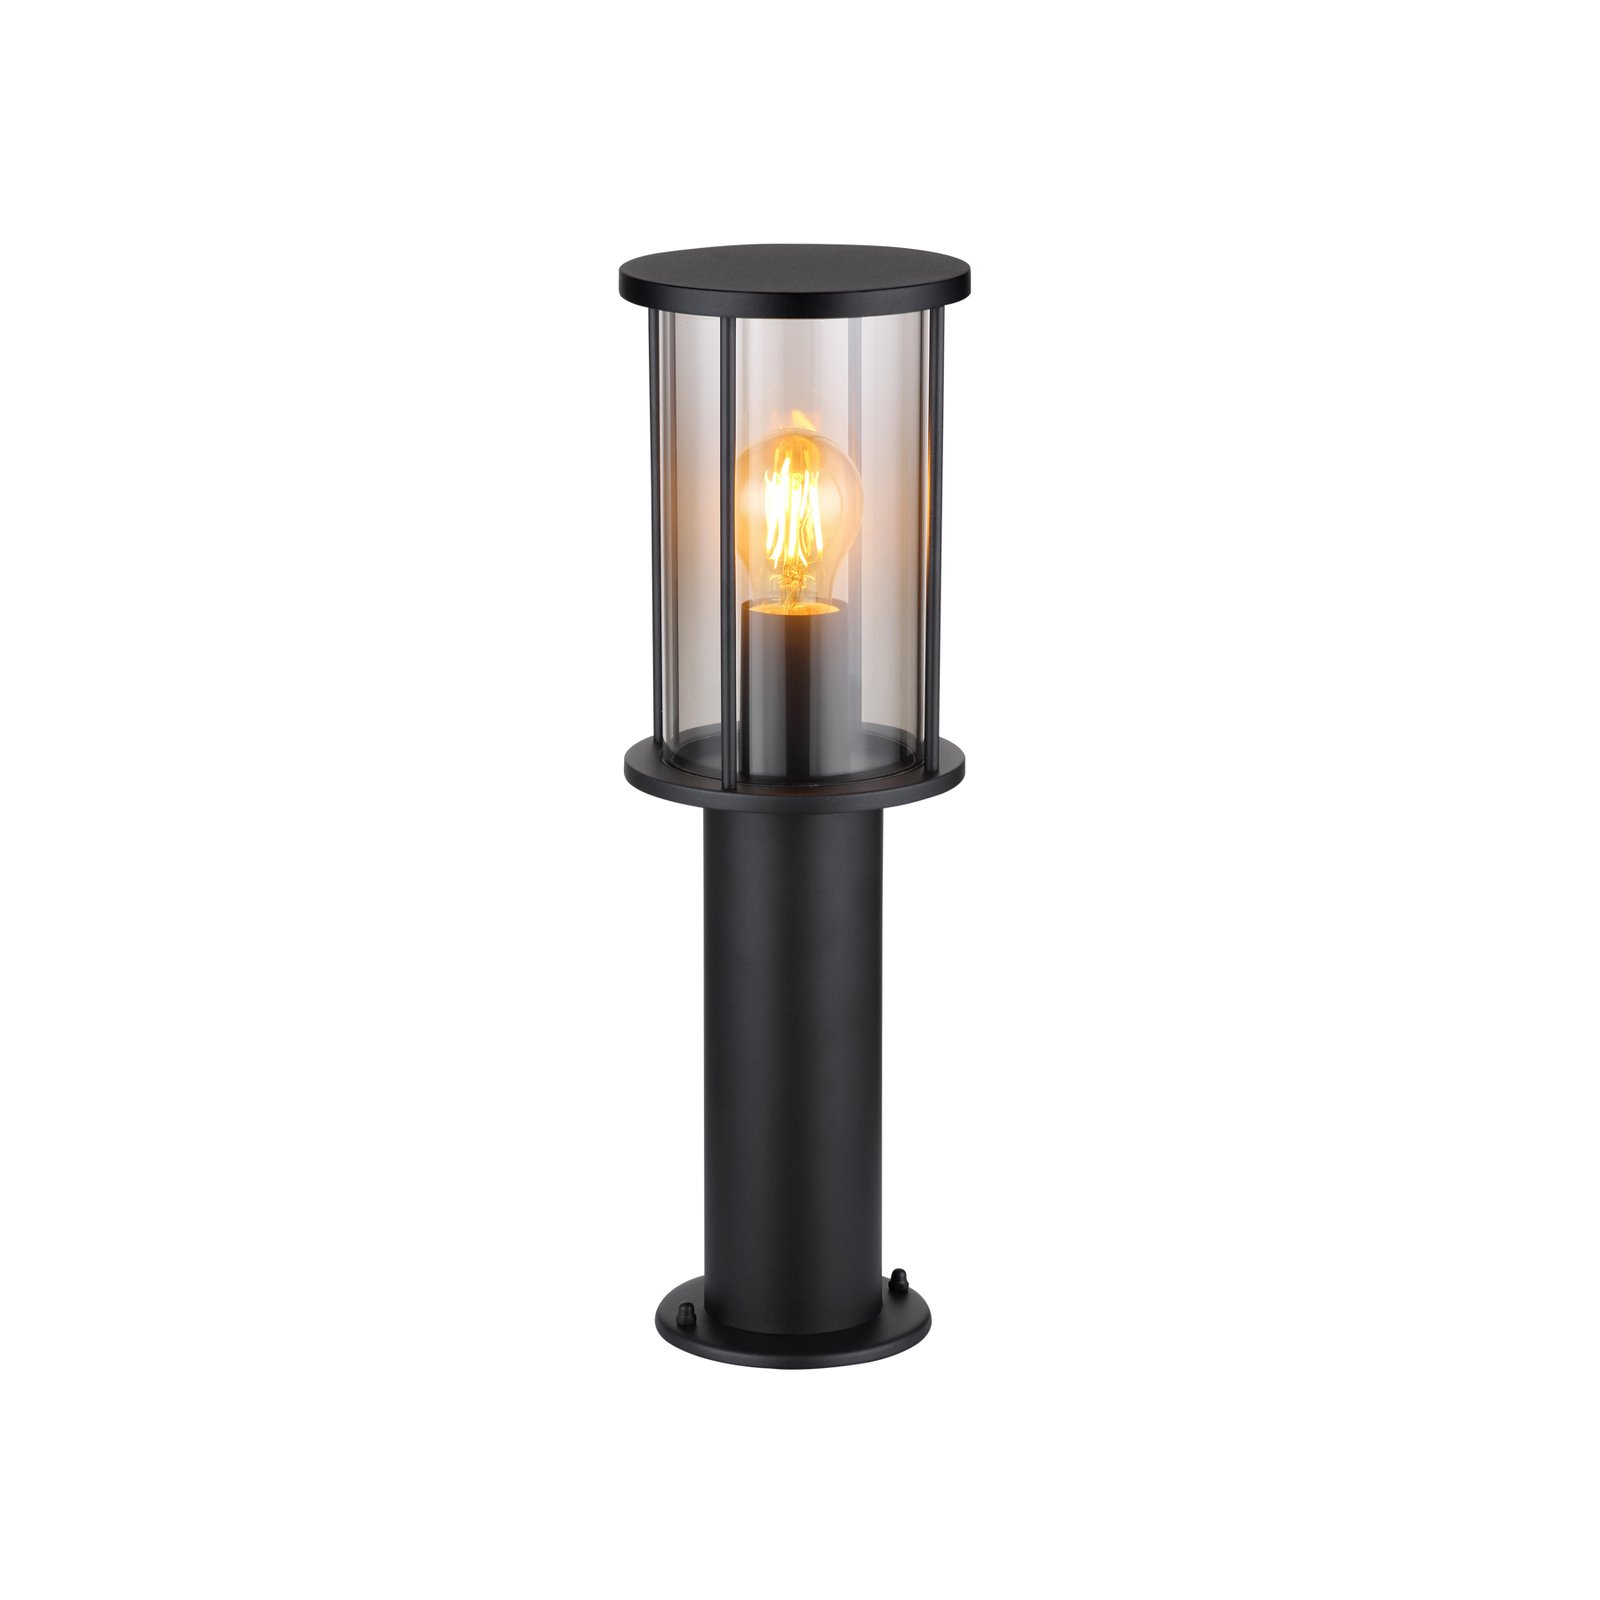 Luminaire pour socle Gracey, hauteur 45 cm, noir, inox, IP54